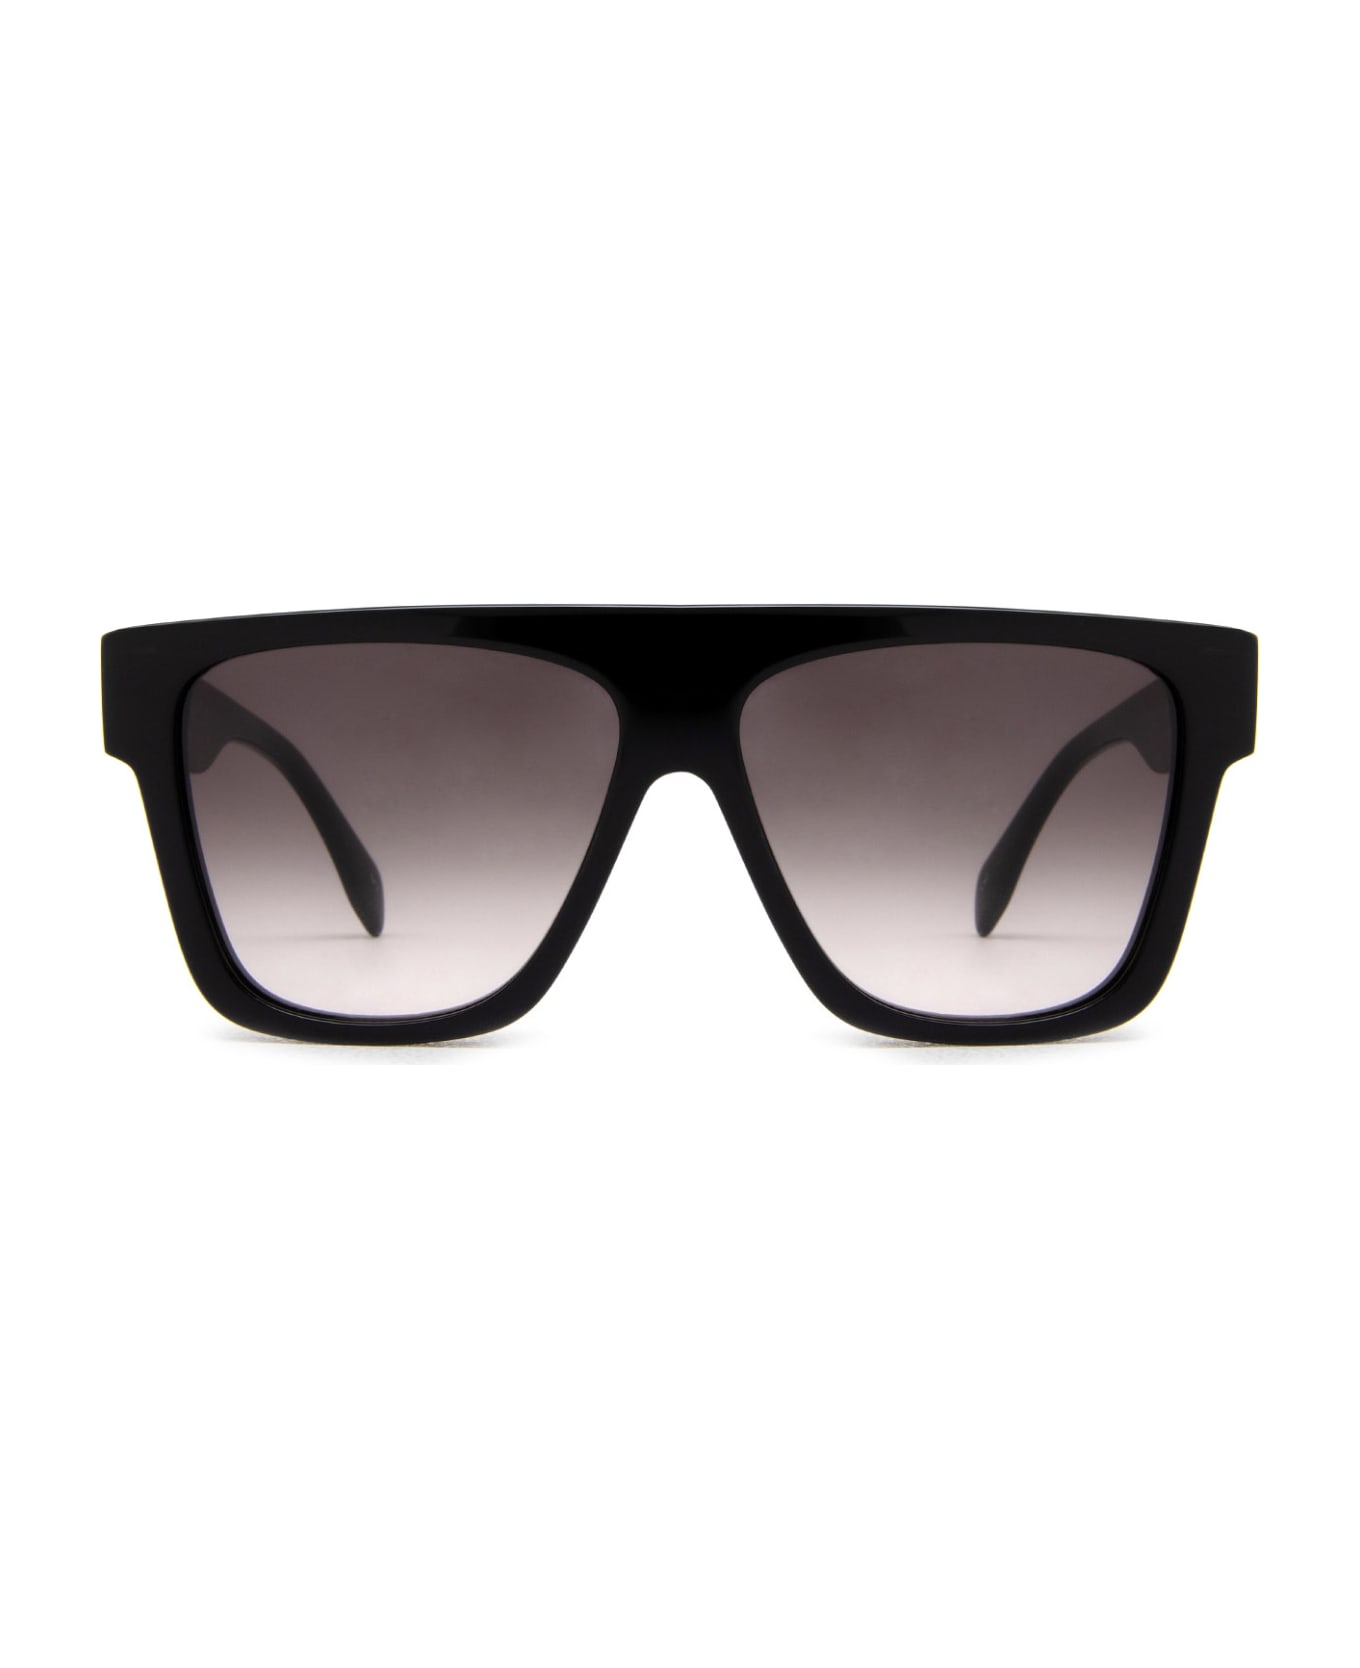 Alexander McQueen Eyewear Am0302s Black round Sunglasses - Black